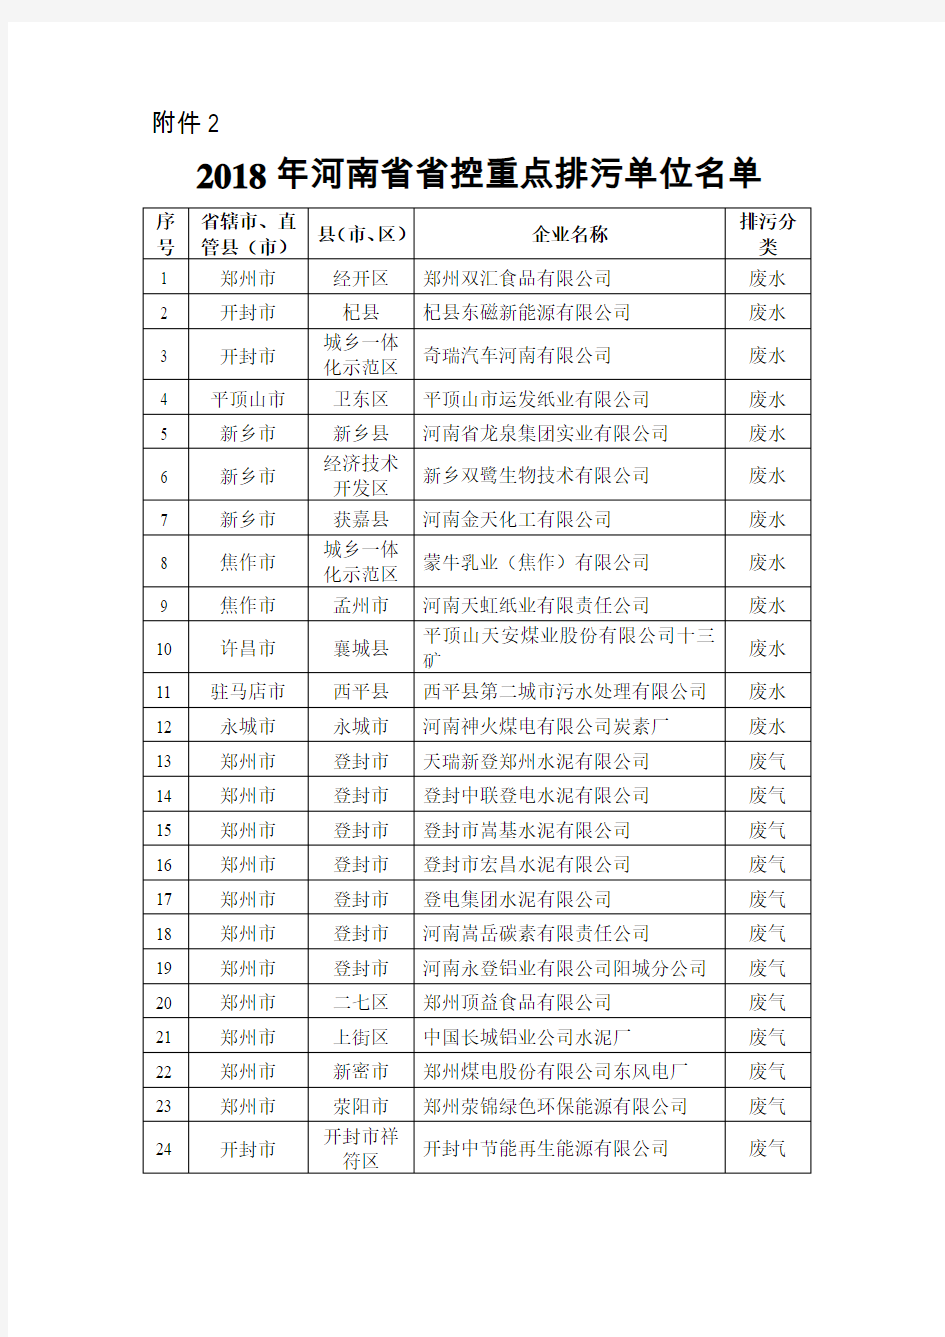 2018 年河南省省控重点排污单位名单